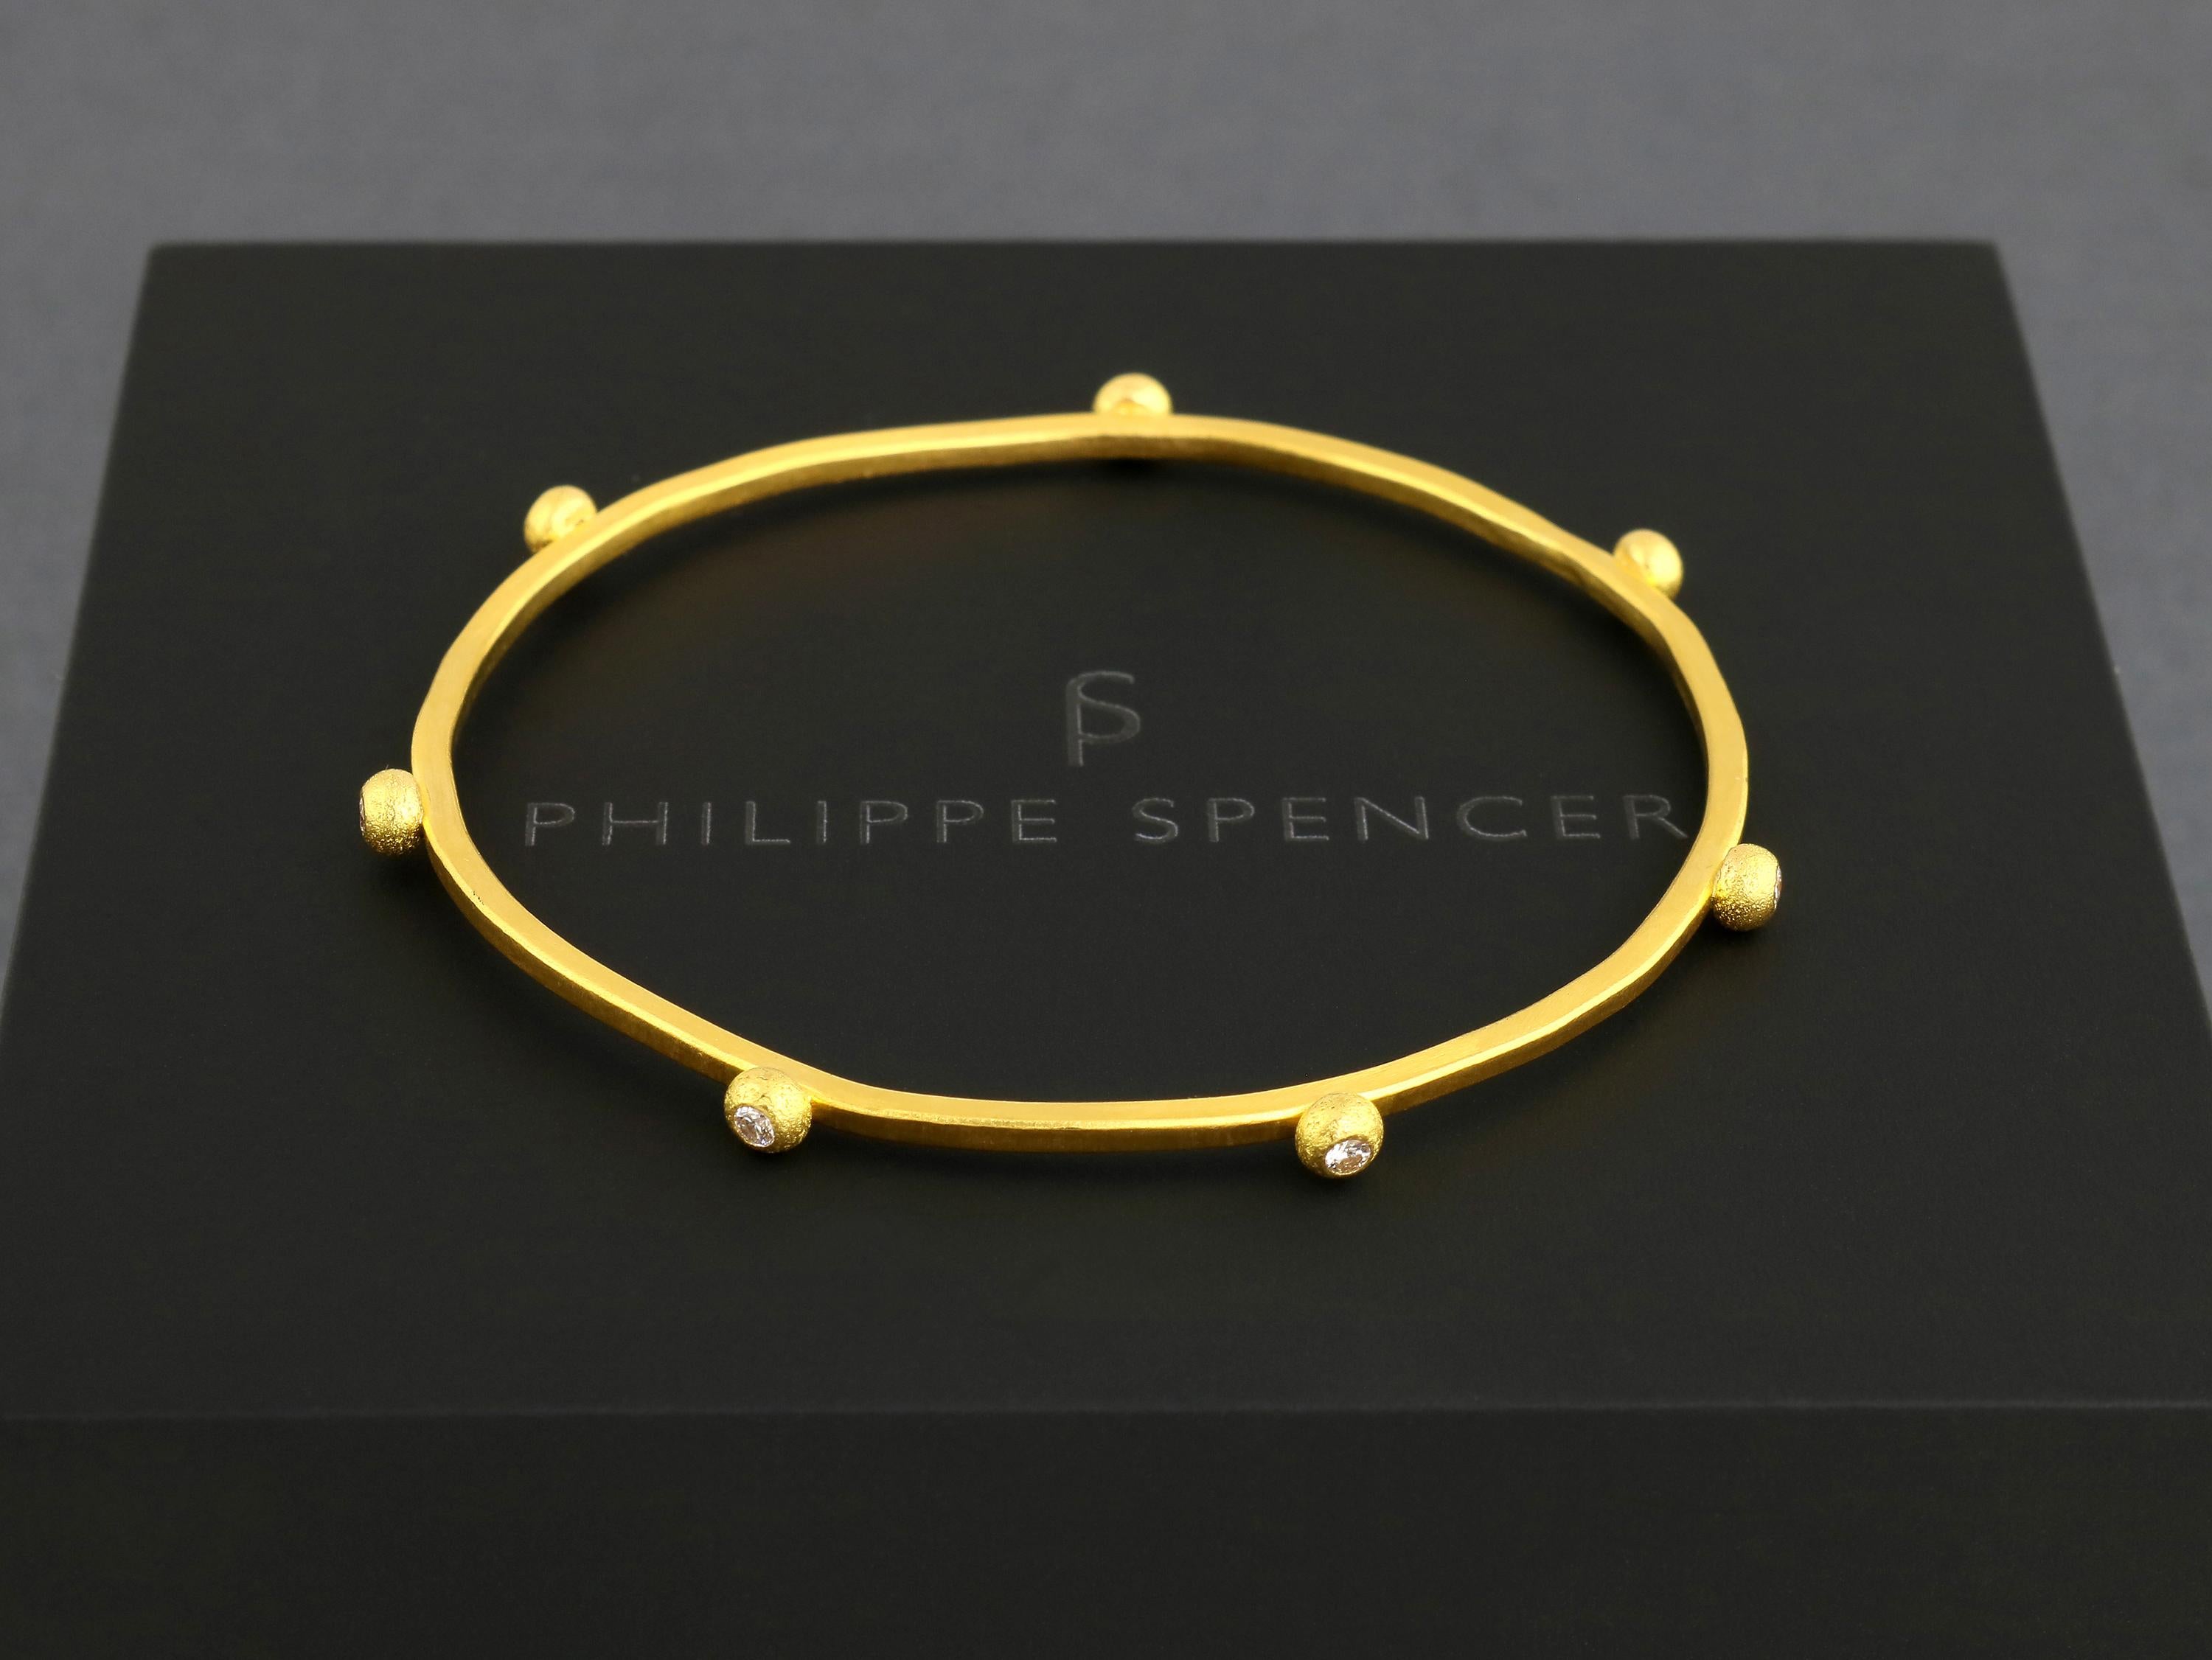 PHILIPPE SPENCER - Massive 24K Gold 2mm X 2mm komplett Hand & Amboss-geschmiedet Armreif mit 7-Quantität COLORLESS (D-F) Diamanten ( 1/3 Ct. Total), eingefasst in reine 22K Goldtropfen. Ein wahrhaft einzigartiges Kunstwerk, das seinesgleichen sucht.